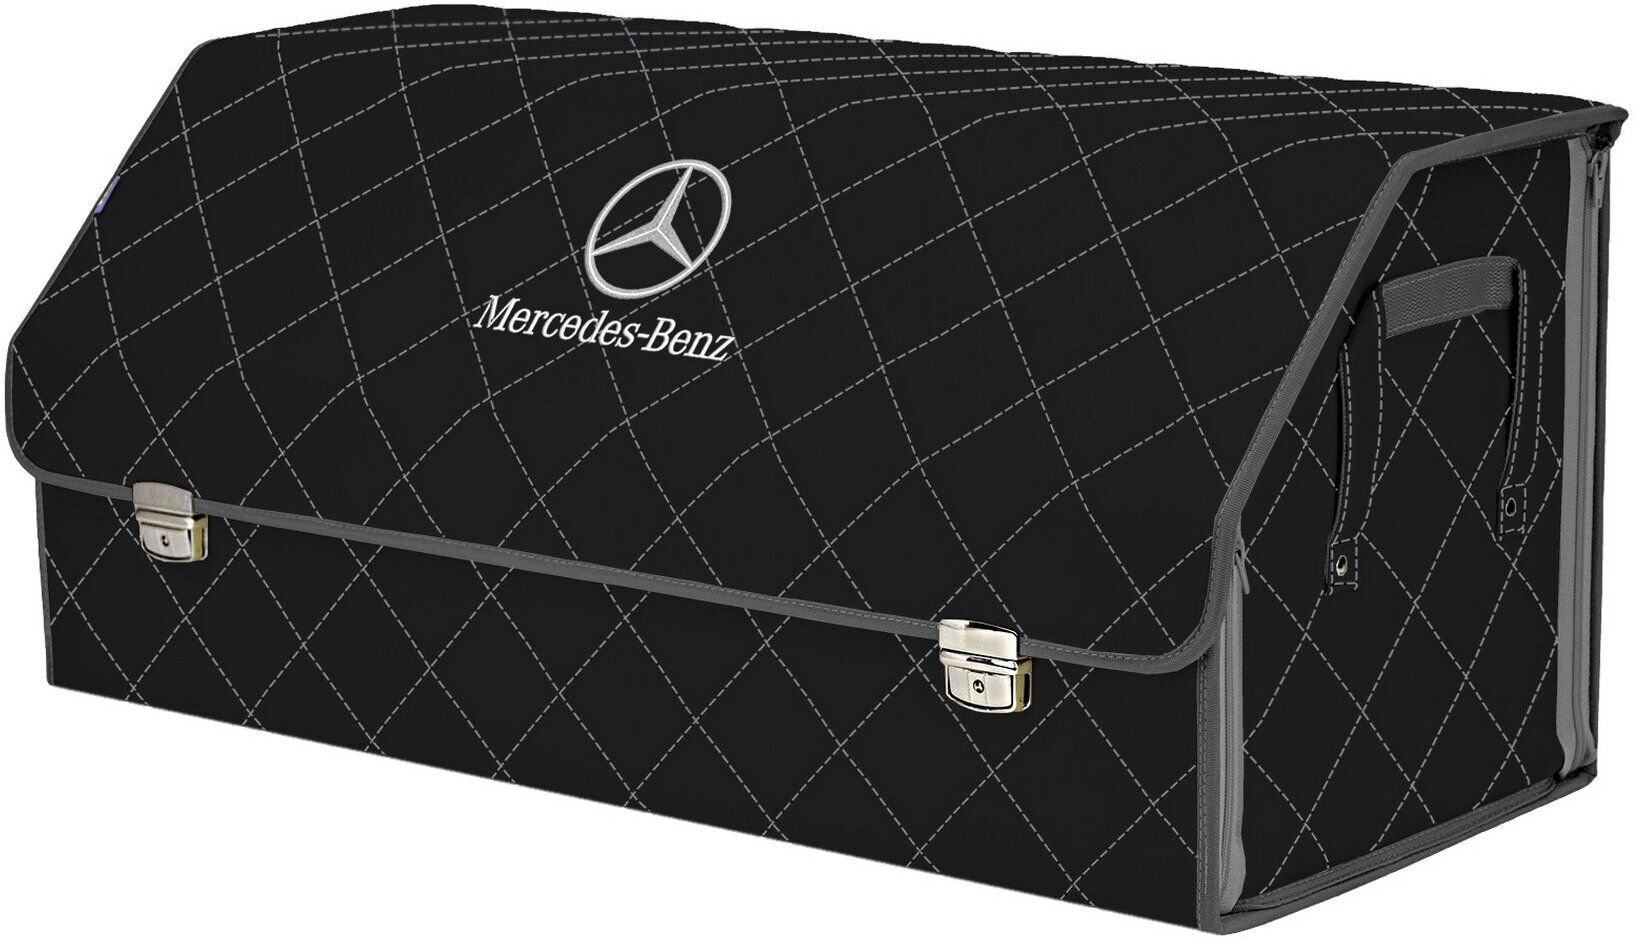 Органайзер-саквояж в багажник "Союз Премиум" (размер XXL). Цвет: черный с серой прострочкой Ромб и вышивкой Mercedes (Мерседес).